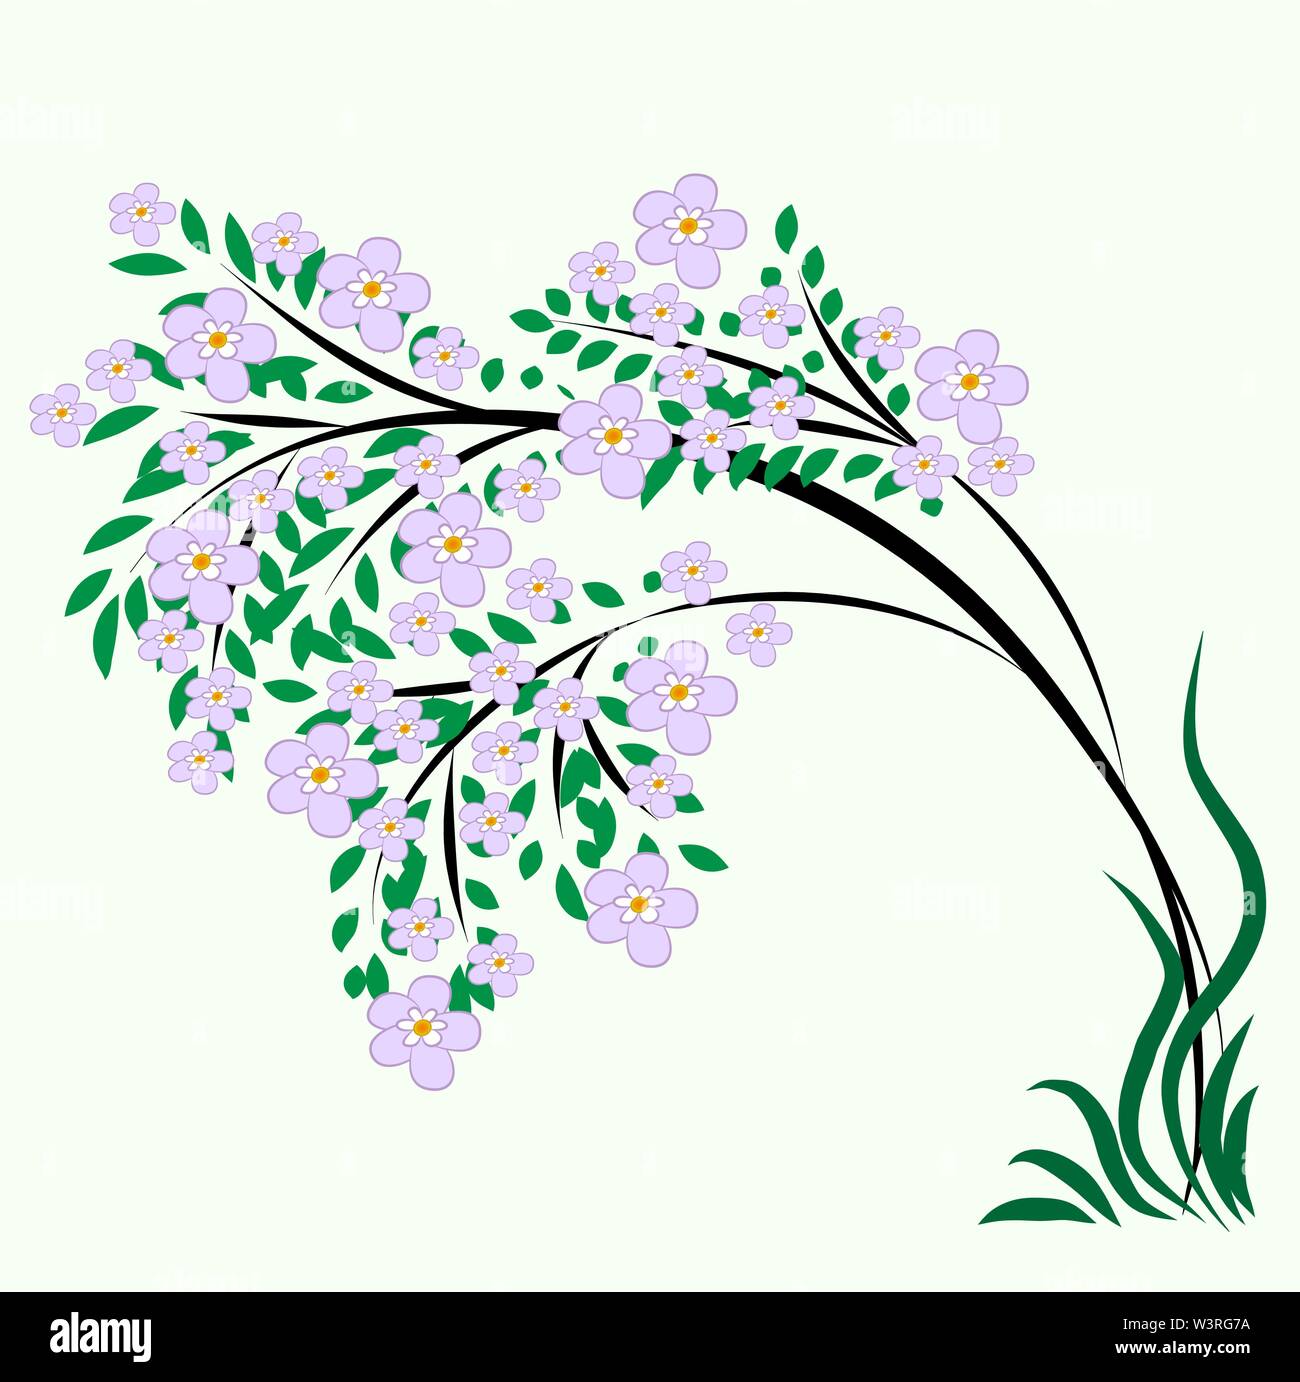 Blooming Tree-Grafik. Ein dünner Baum übersät mit riesigen violetten Blüten und beugte sich aus dem Gewicht der prächtigen Krone. Illustration, Design. Vec Stock Vektor